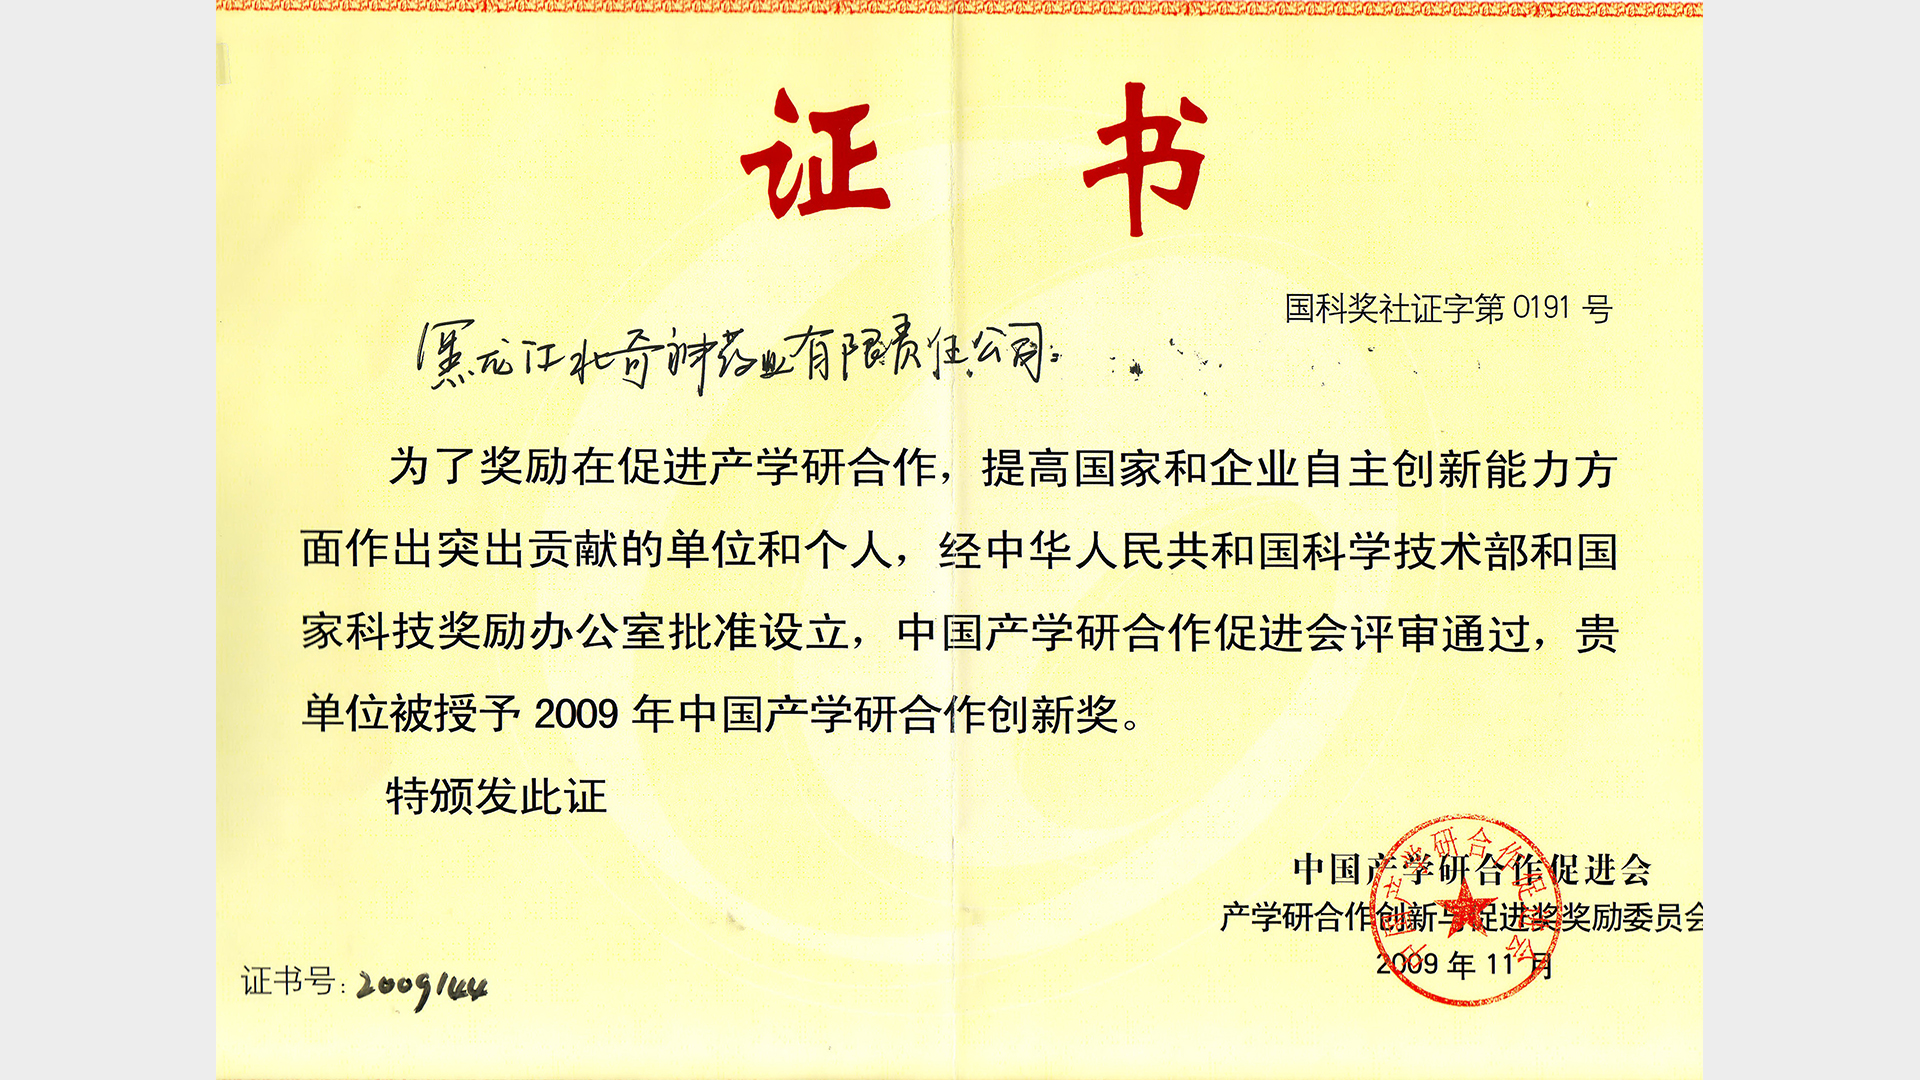 2009年中国产学研合作创新奖